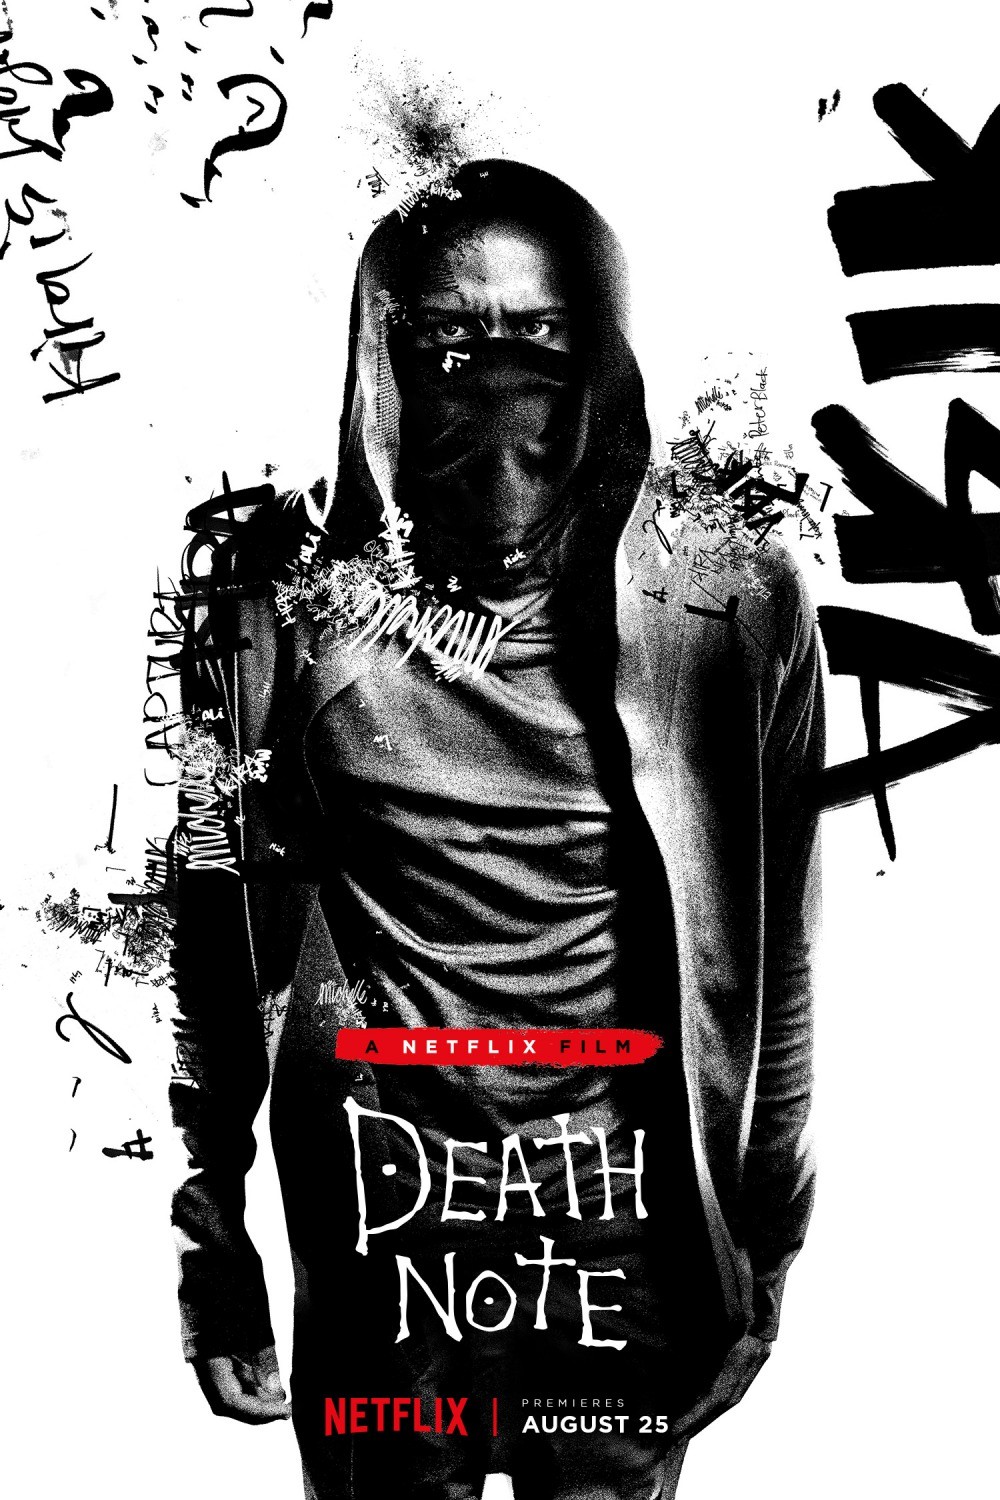 Тетрадь смерти / Death Note (2017) отзывы. Рецензии. Новости кино. Актеры фильма Тетрадь смерти. Отзывы о фильме Тетрадь смерти